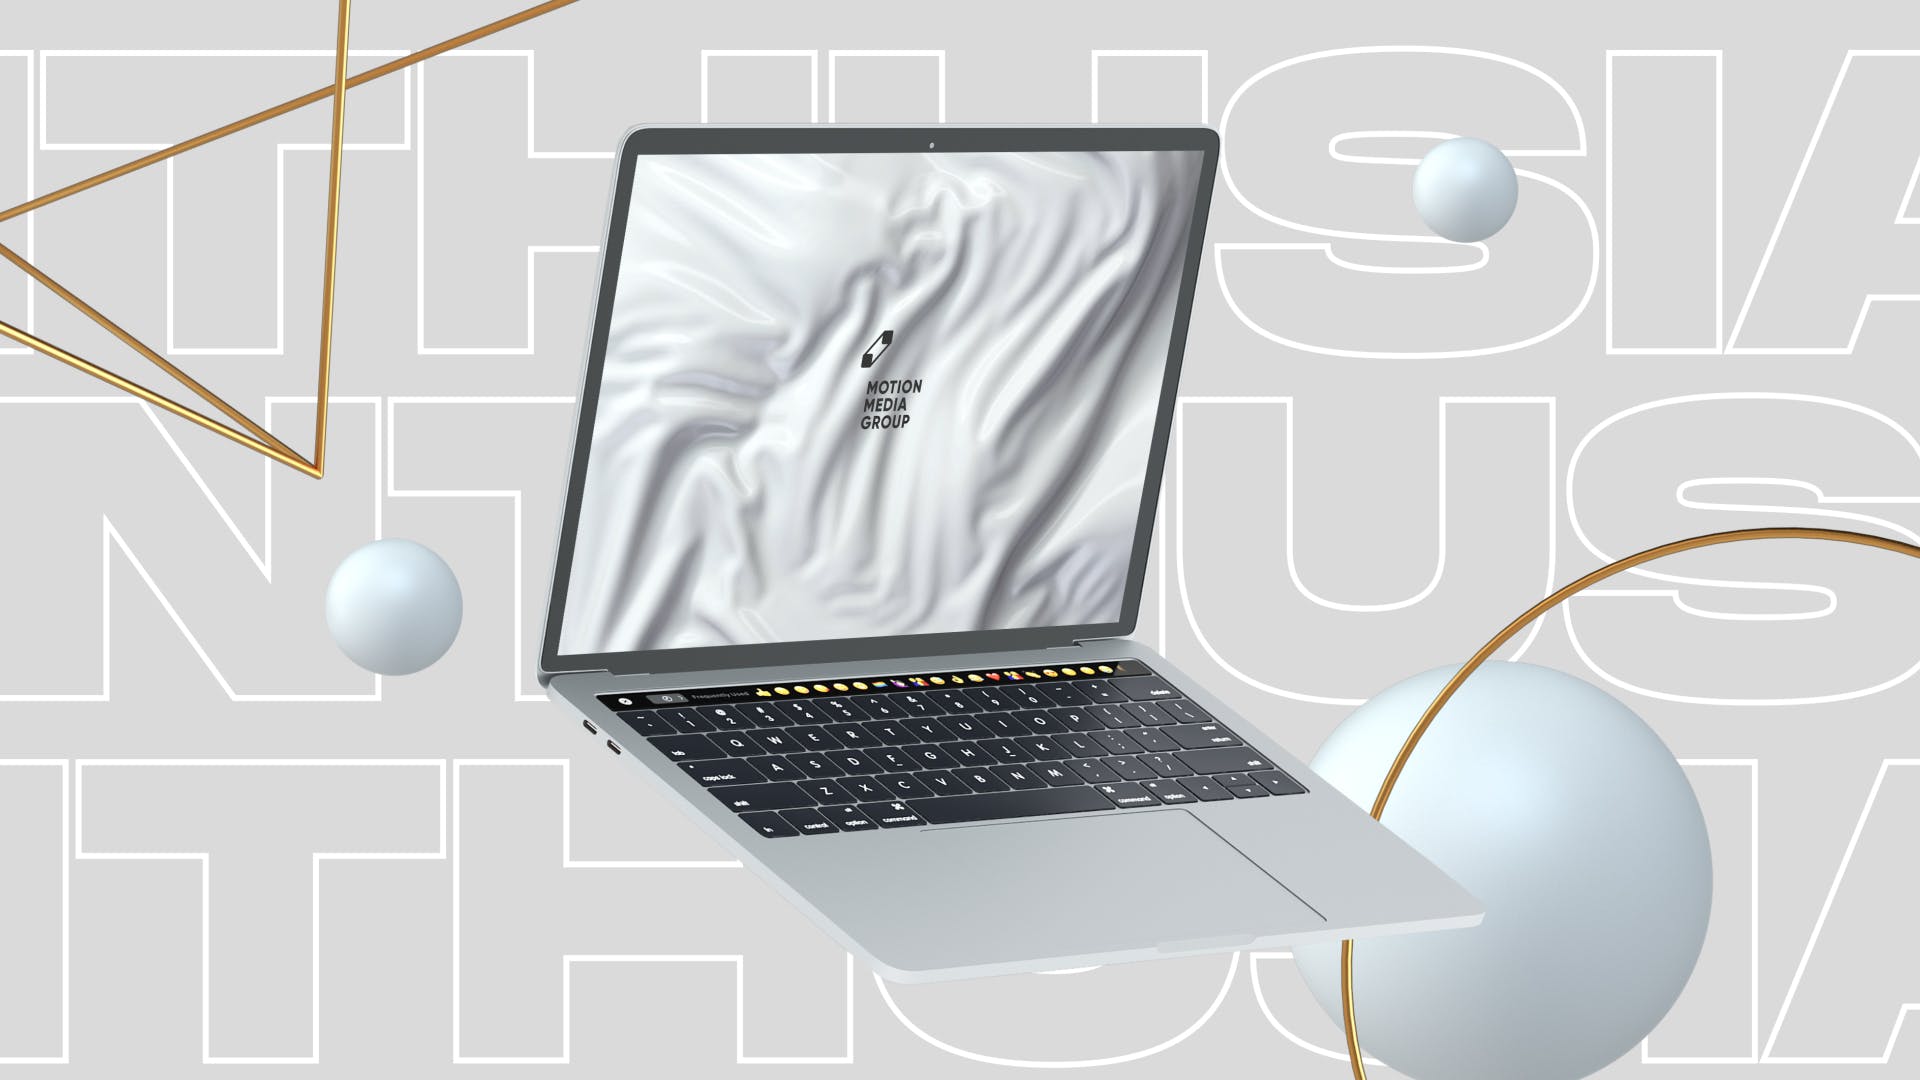 优雅时尚风格3D立体风格笔记本电脑屏幕预览第一素材精选样机 10 Light Laptop Mockups插图(1)